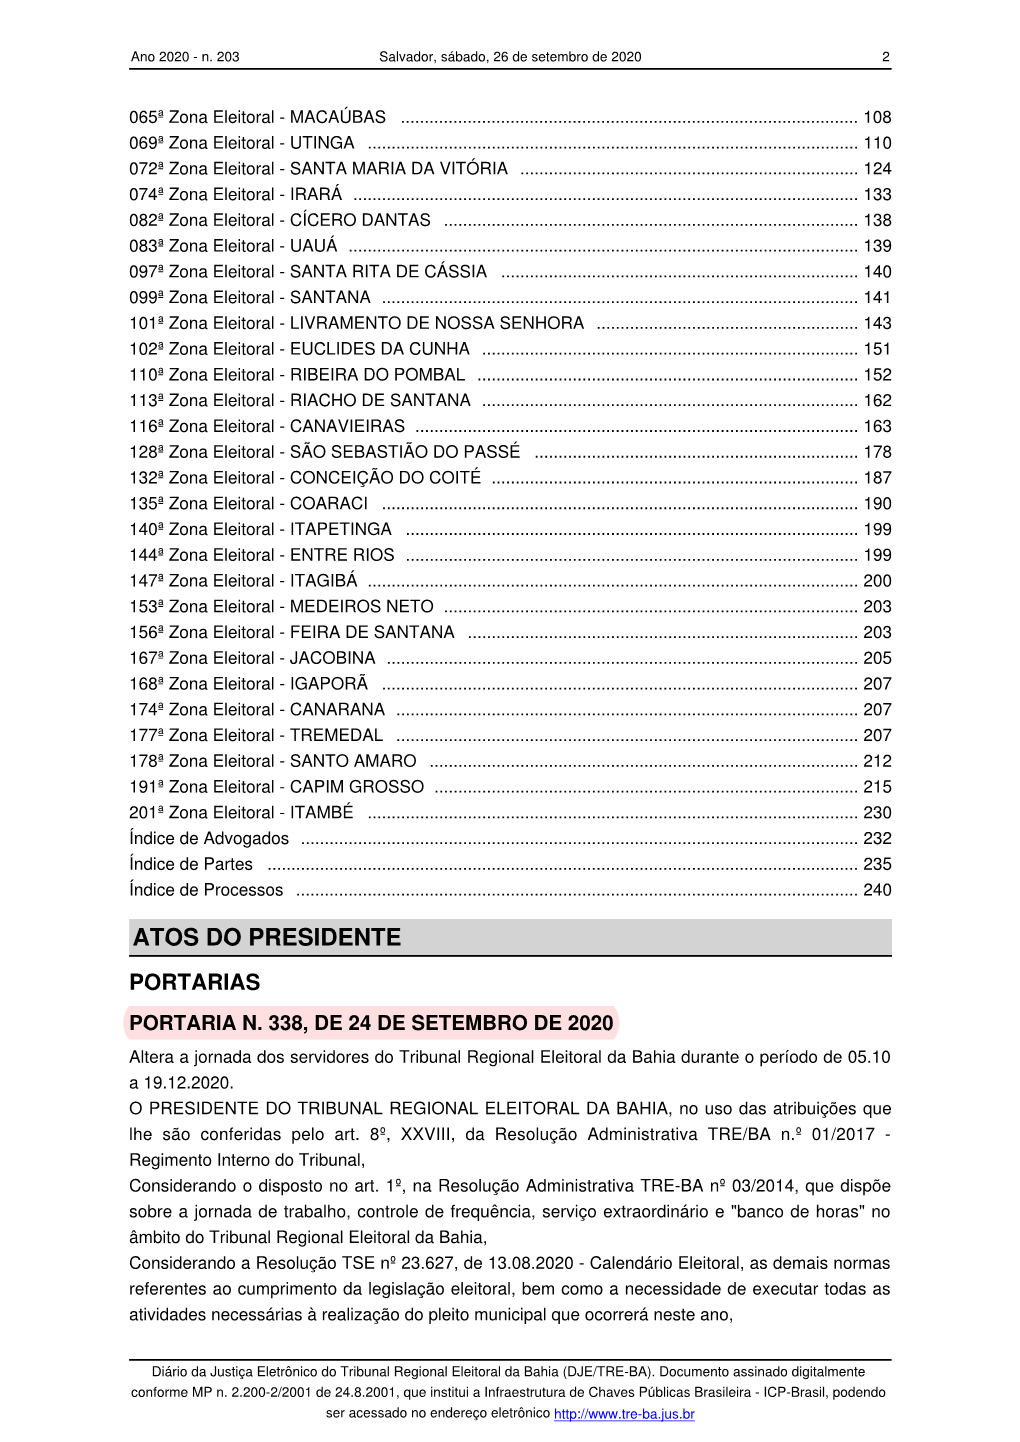 Altera a Jornada Dos Servidores Do Tribunal Regional Eleitoral Da Bahia Durante O Período De 05.10 a 19.12.2020